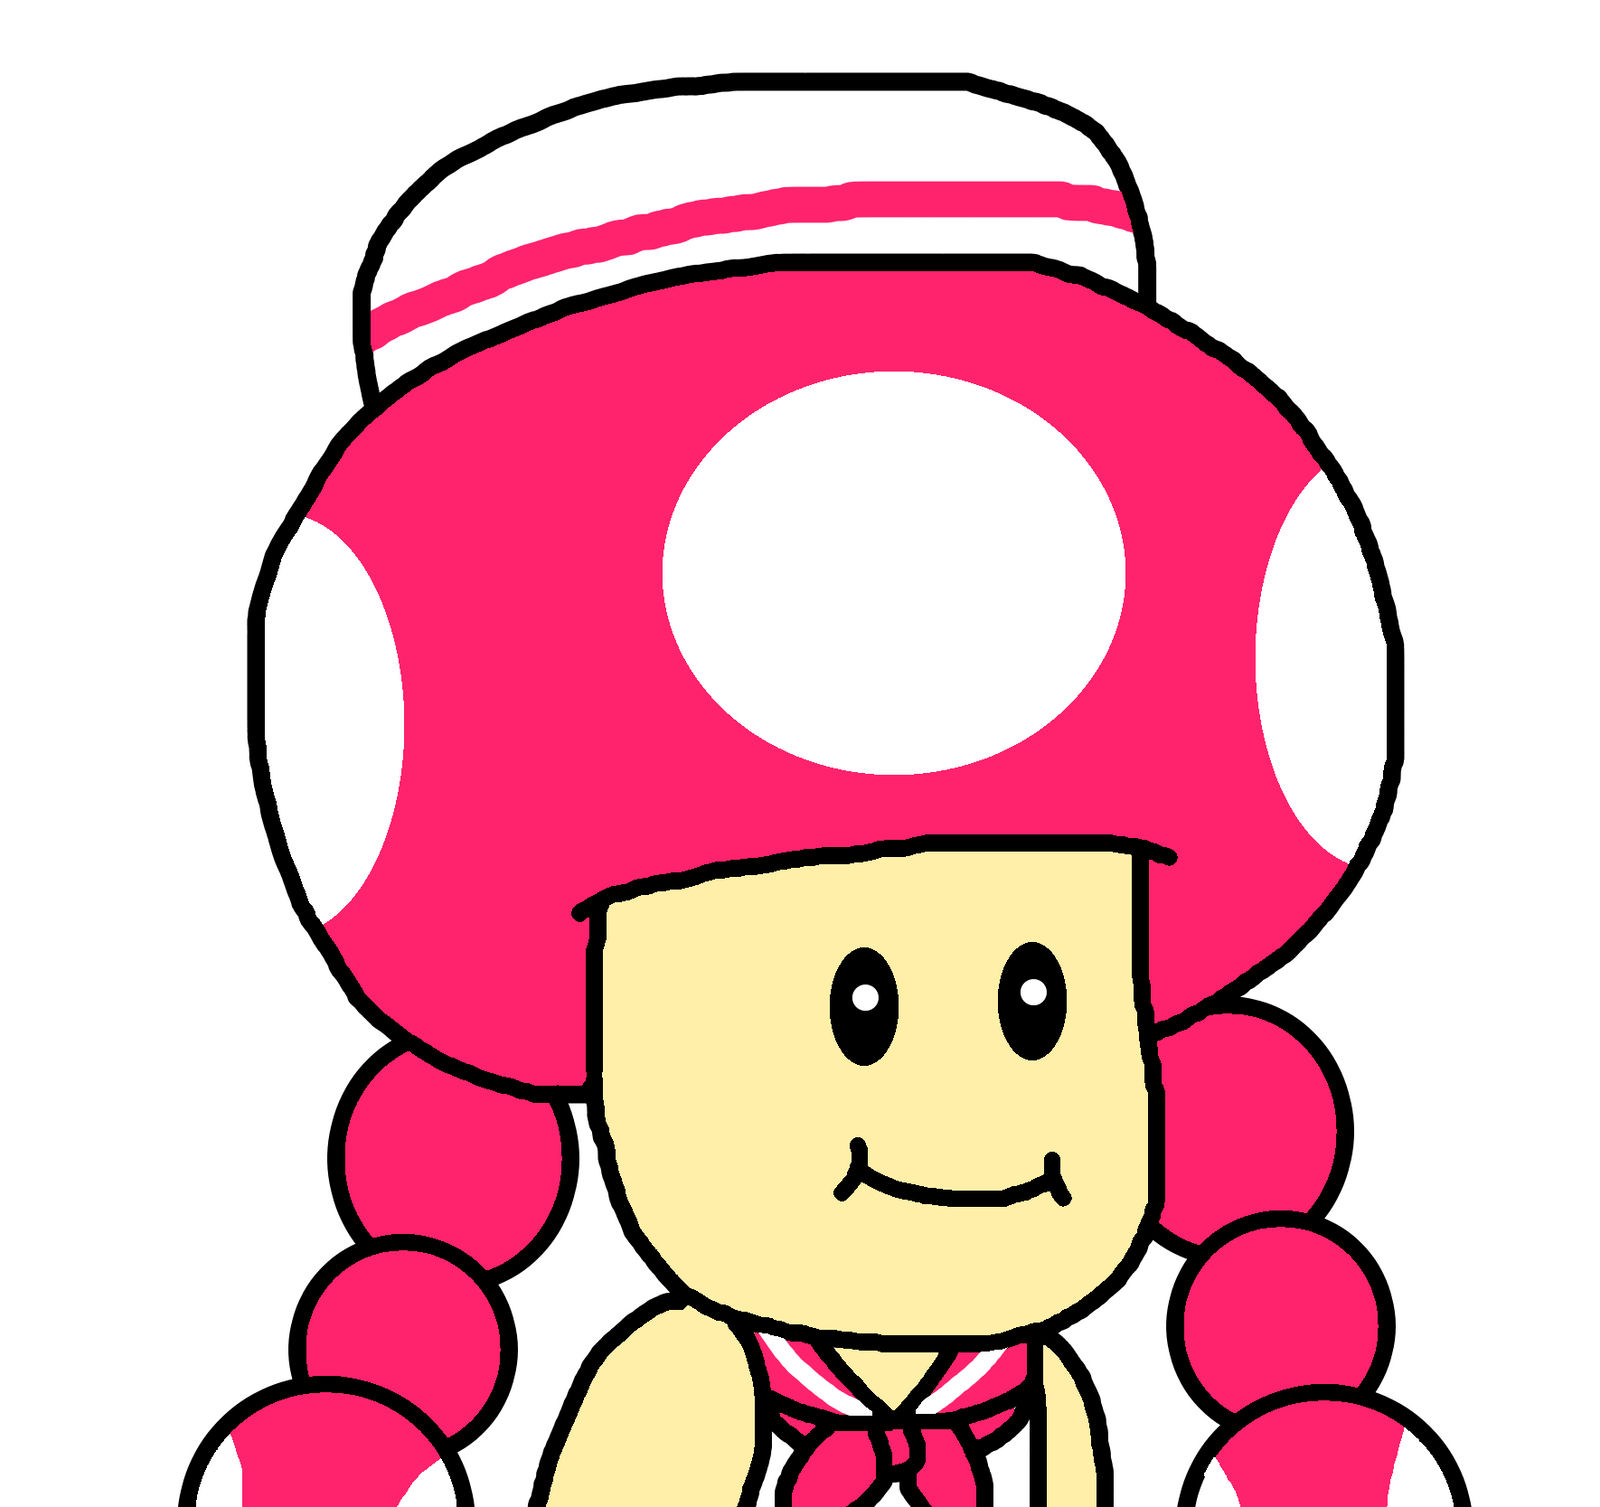 Mario kart tour, Hello yoshi Wiki